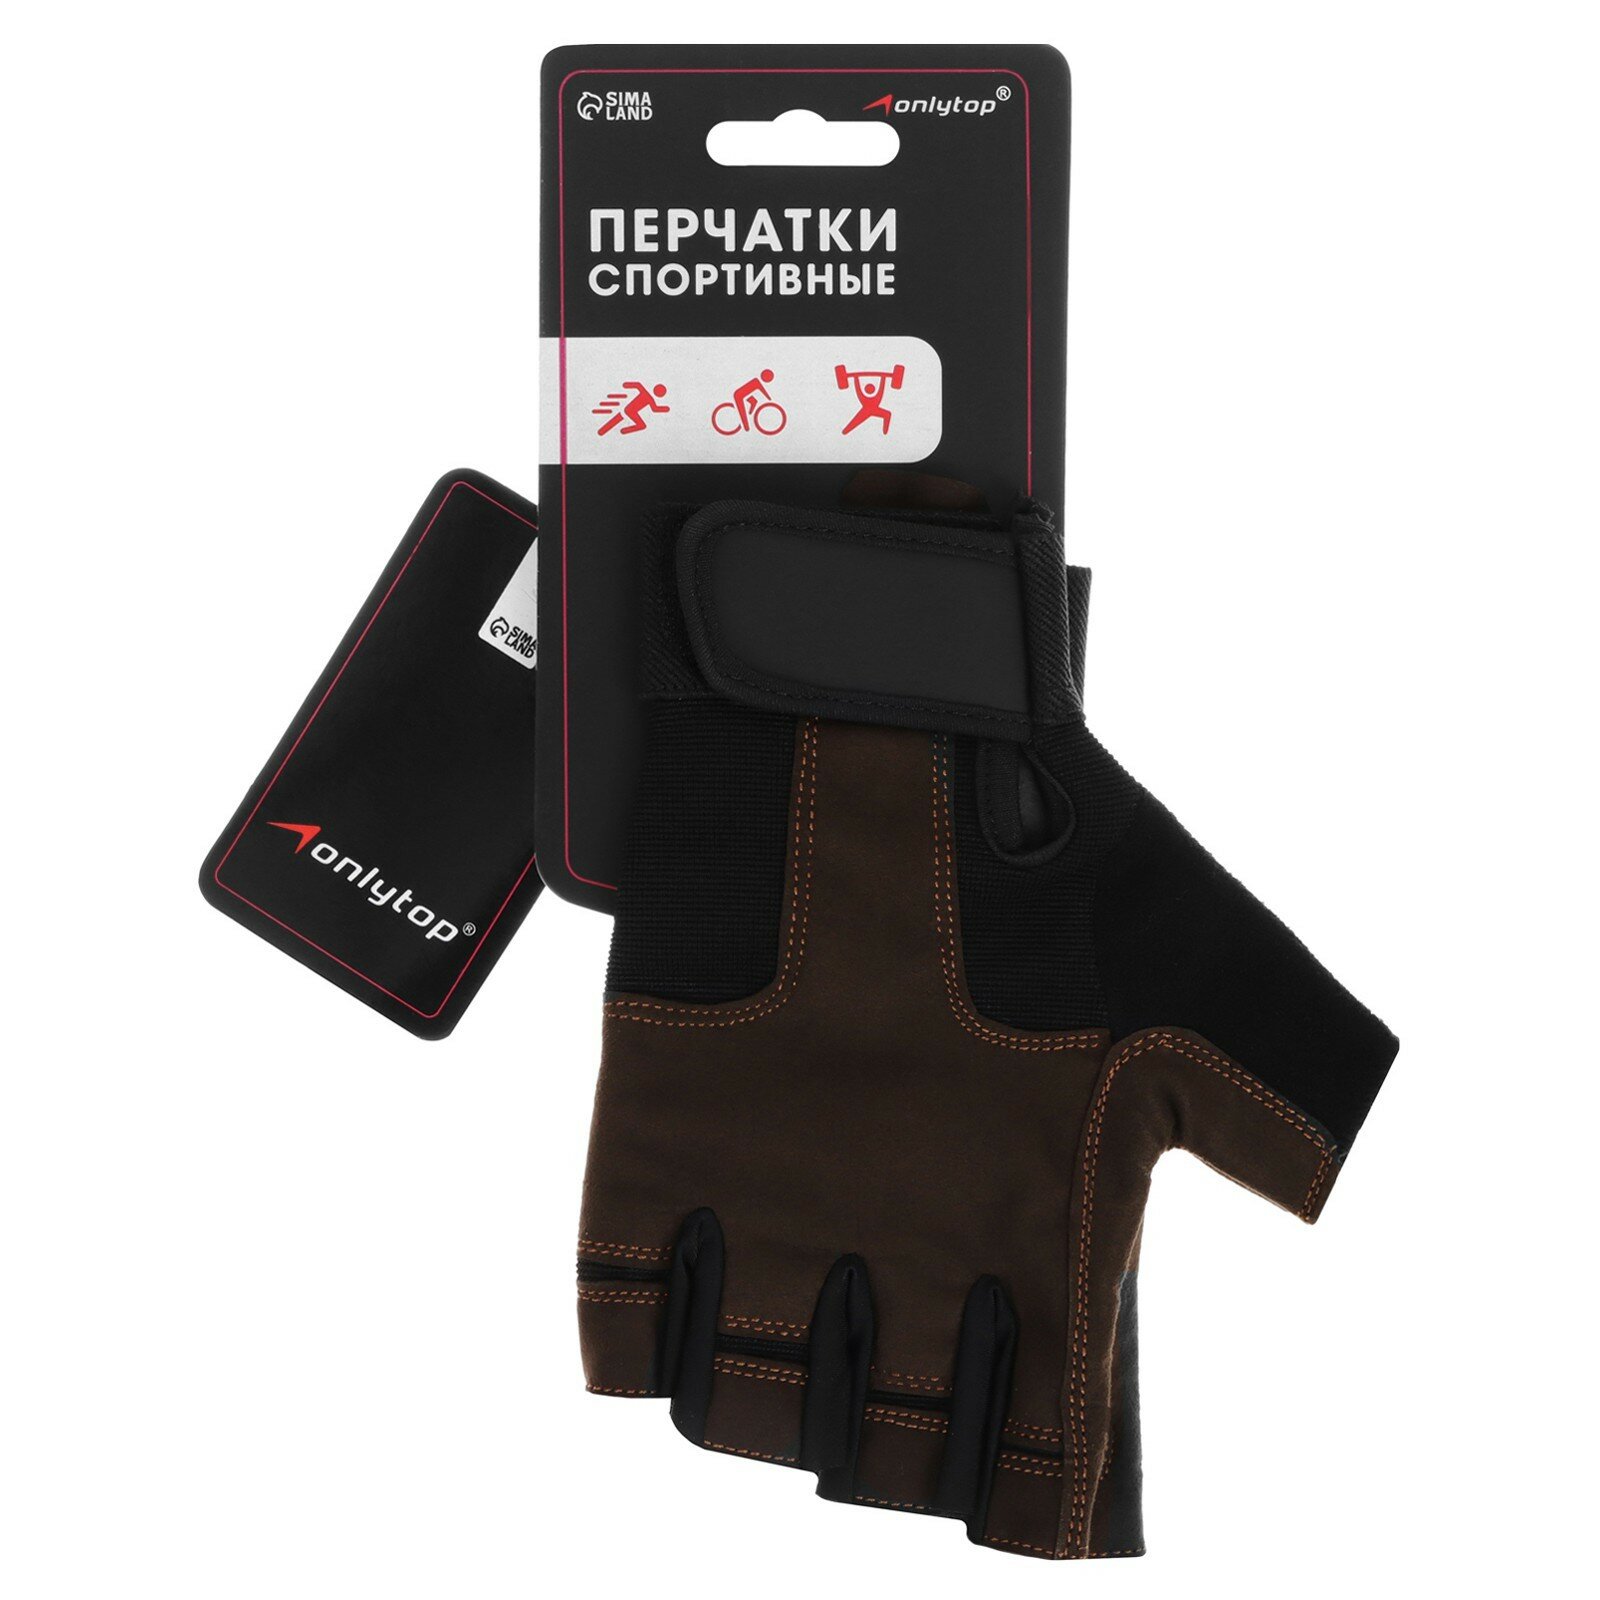 Спортивные перчатки ONLYTOP модель 9053, размер L, цвет коричневый